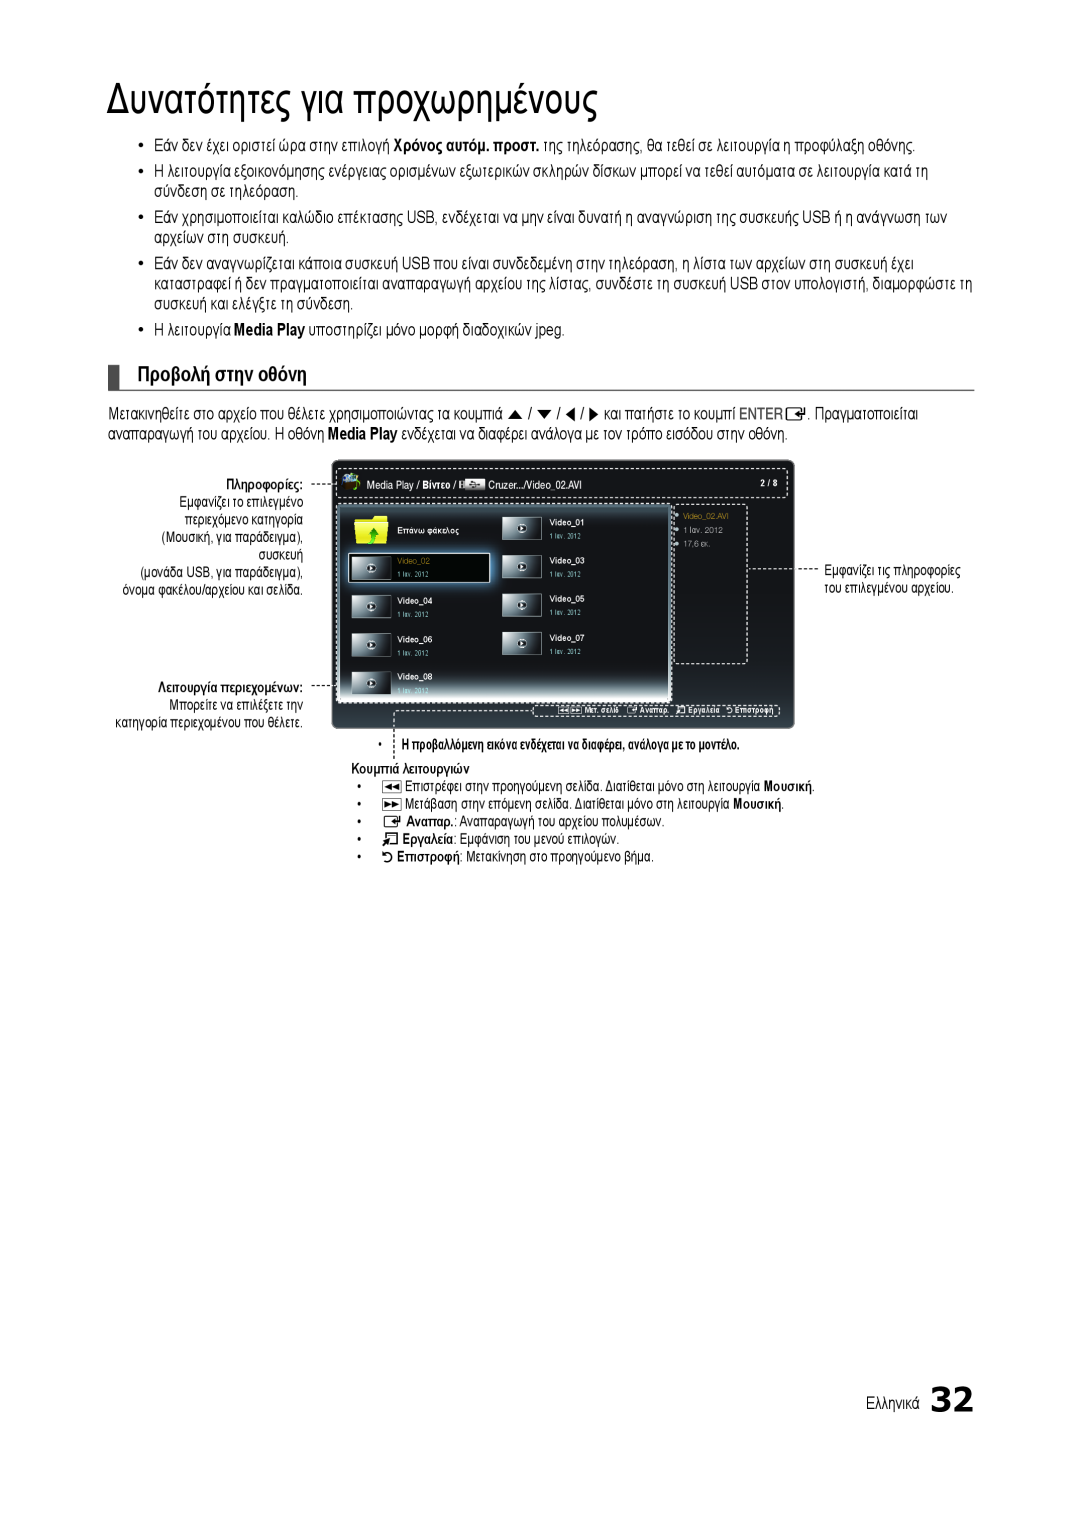 Samsung LT24B301EWY/EN, LT22B350EW/EN Προβολή στην οθόνη, x x x, Δυνατότητες για προχωρημένους, Λειτουργία περιεχομένων 